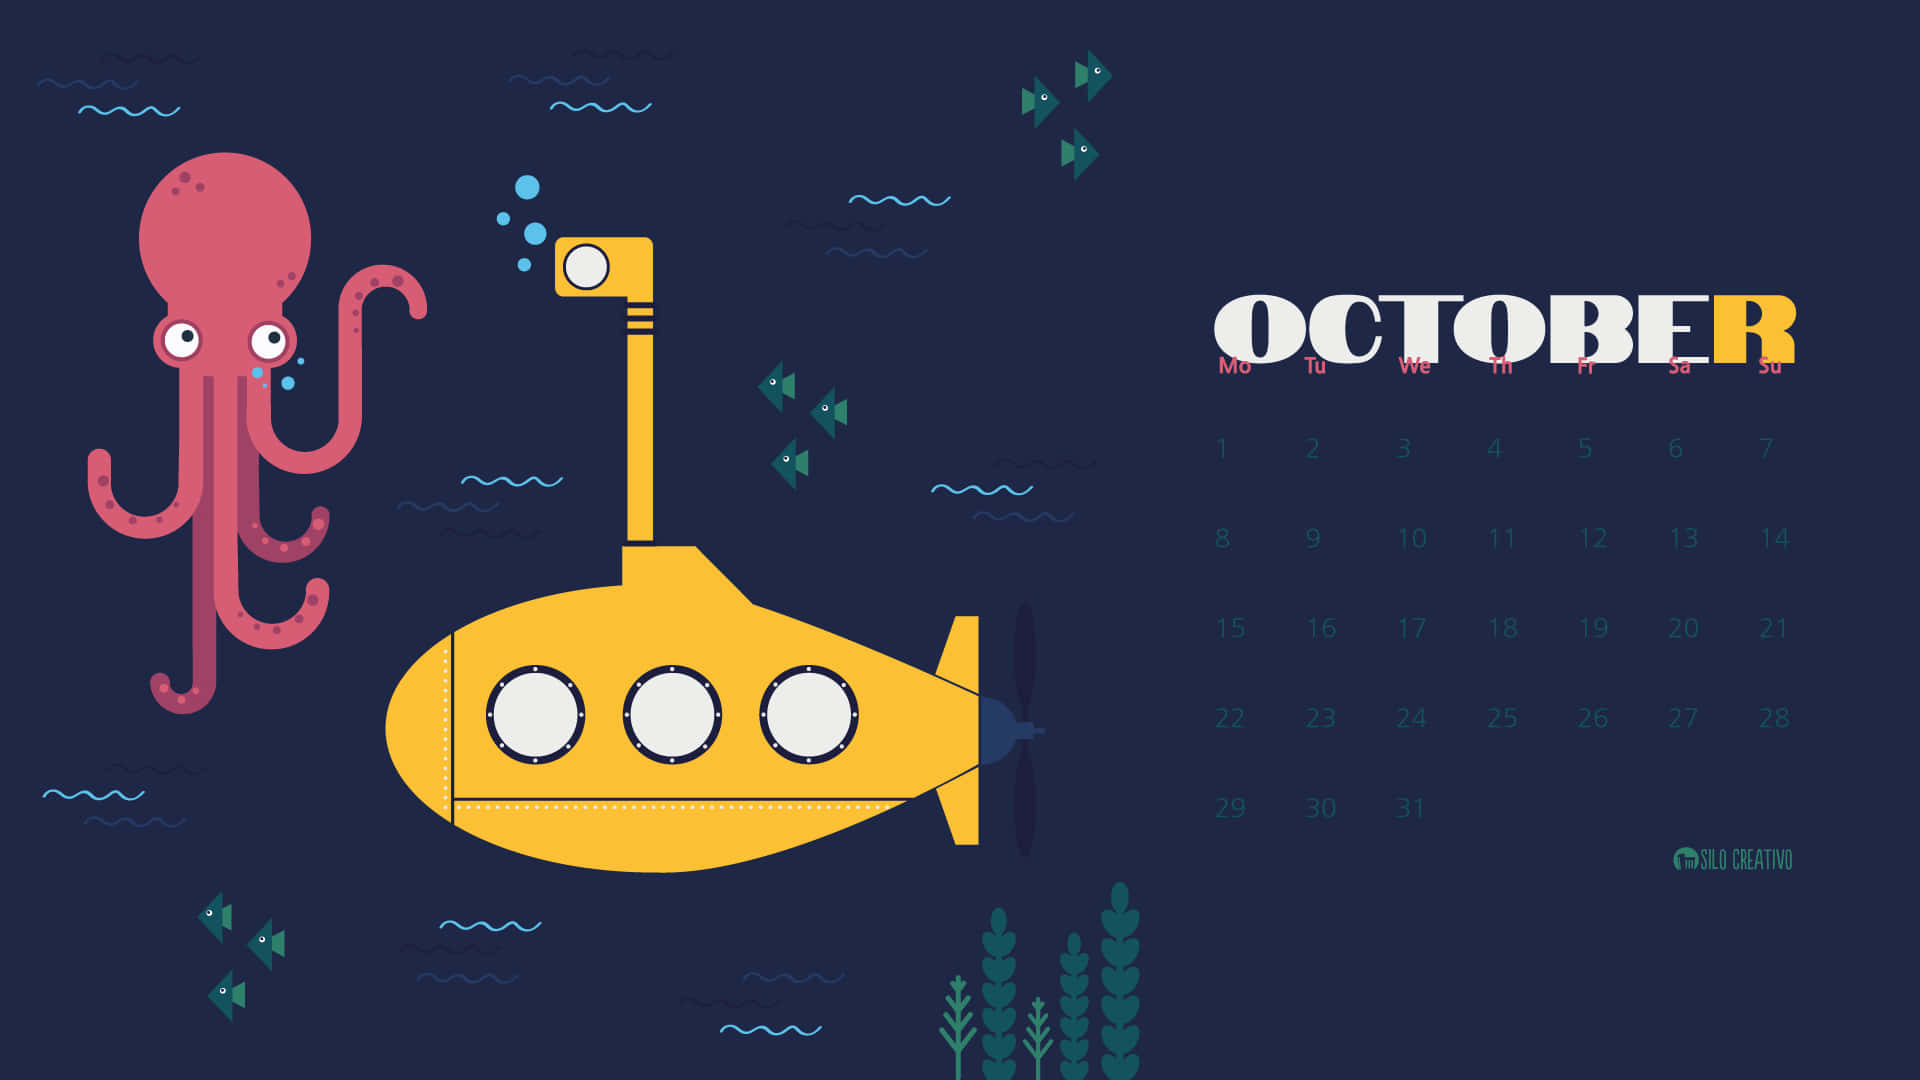 Oktoberhintergrundbild Mit Einem U-boot Und Einem Oktopus. Wallpaper